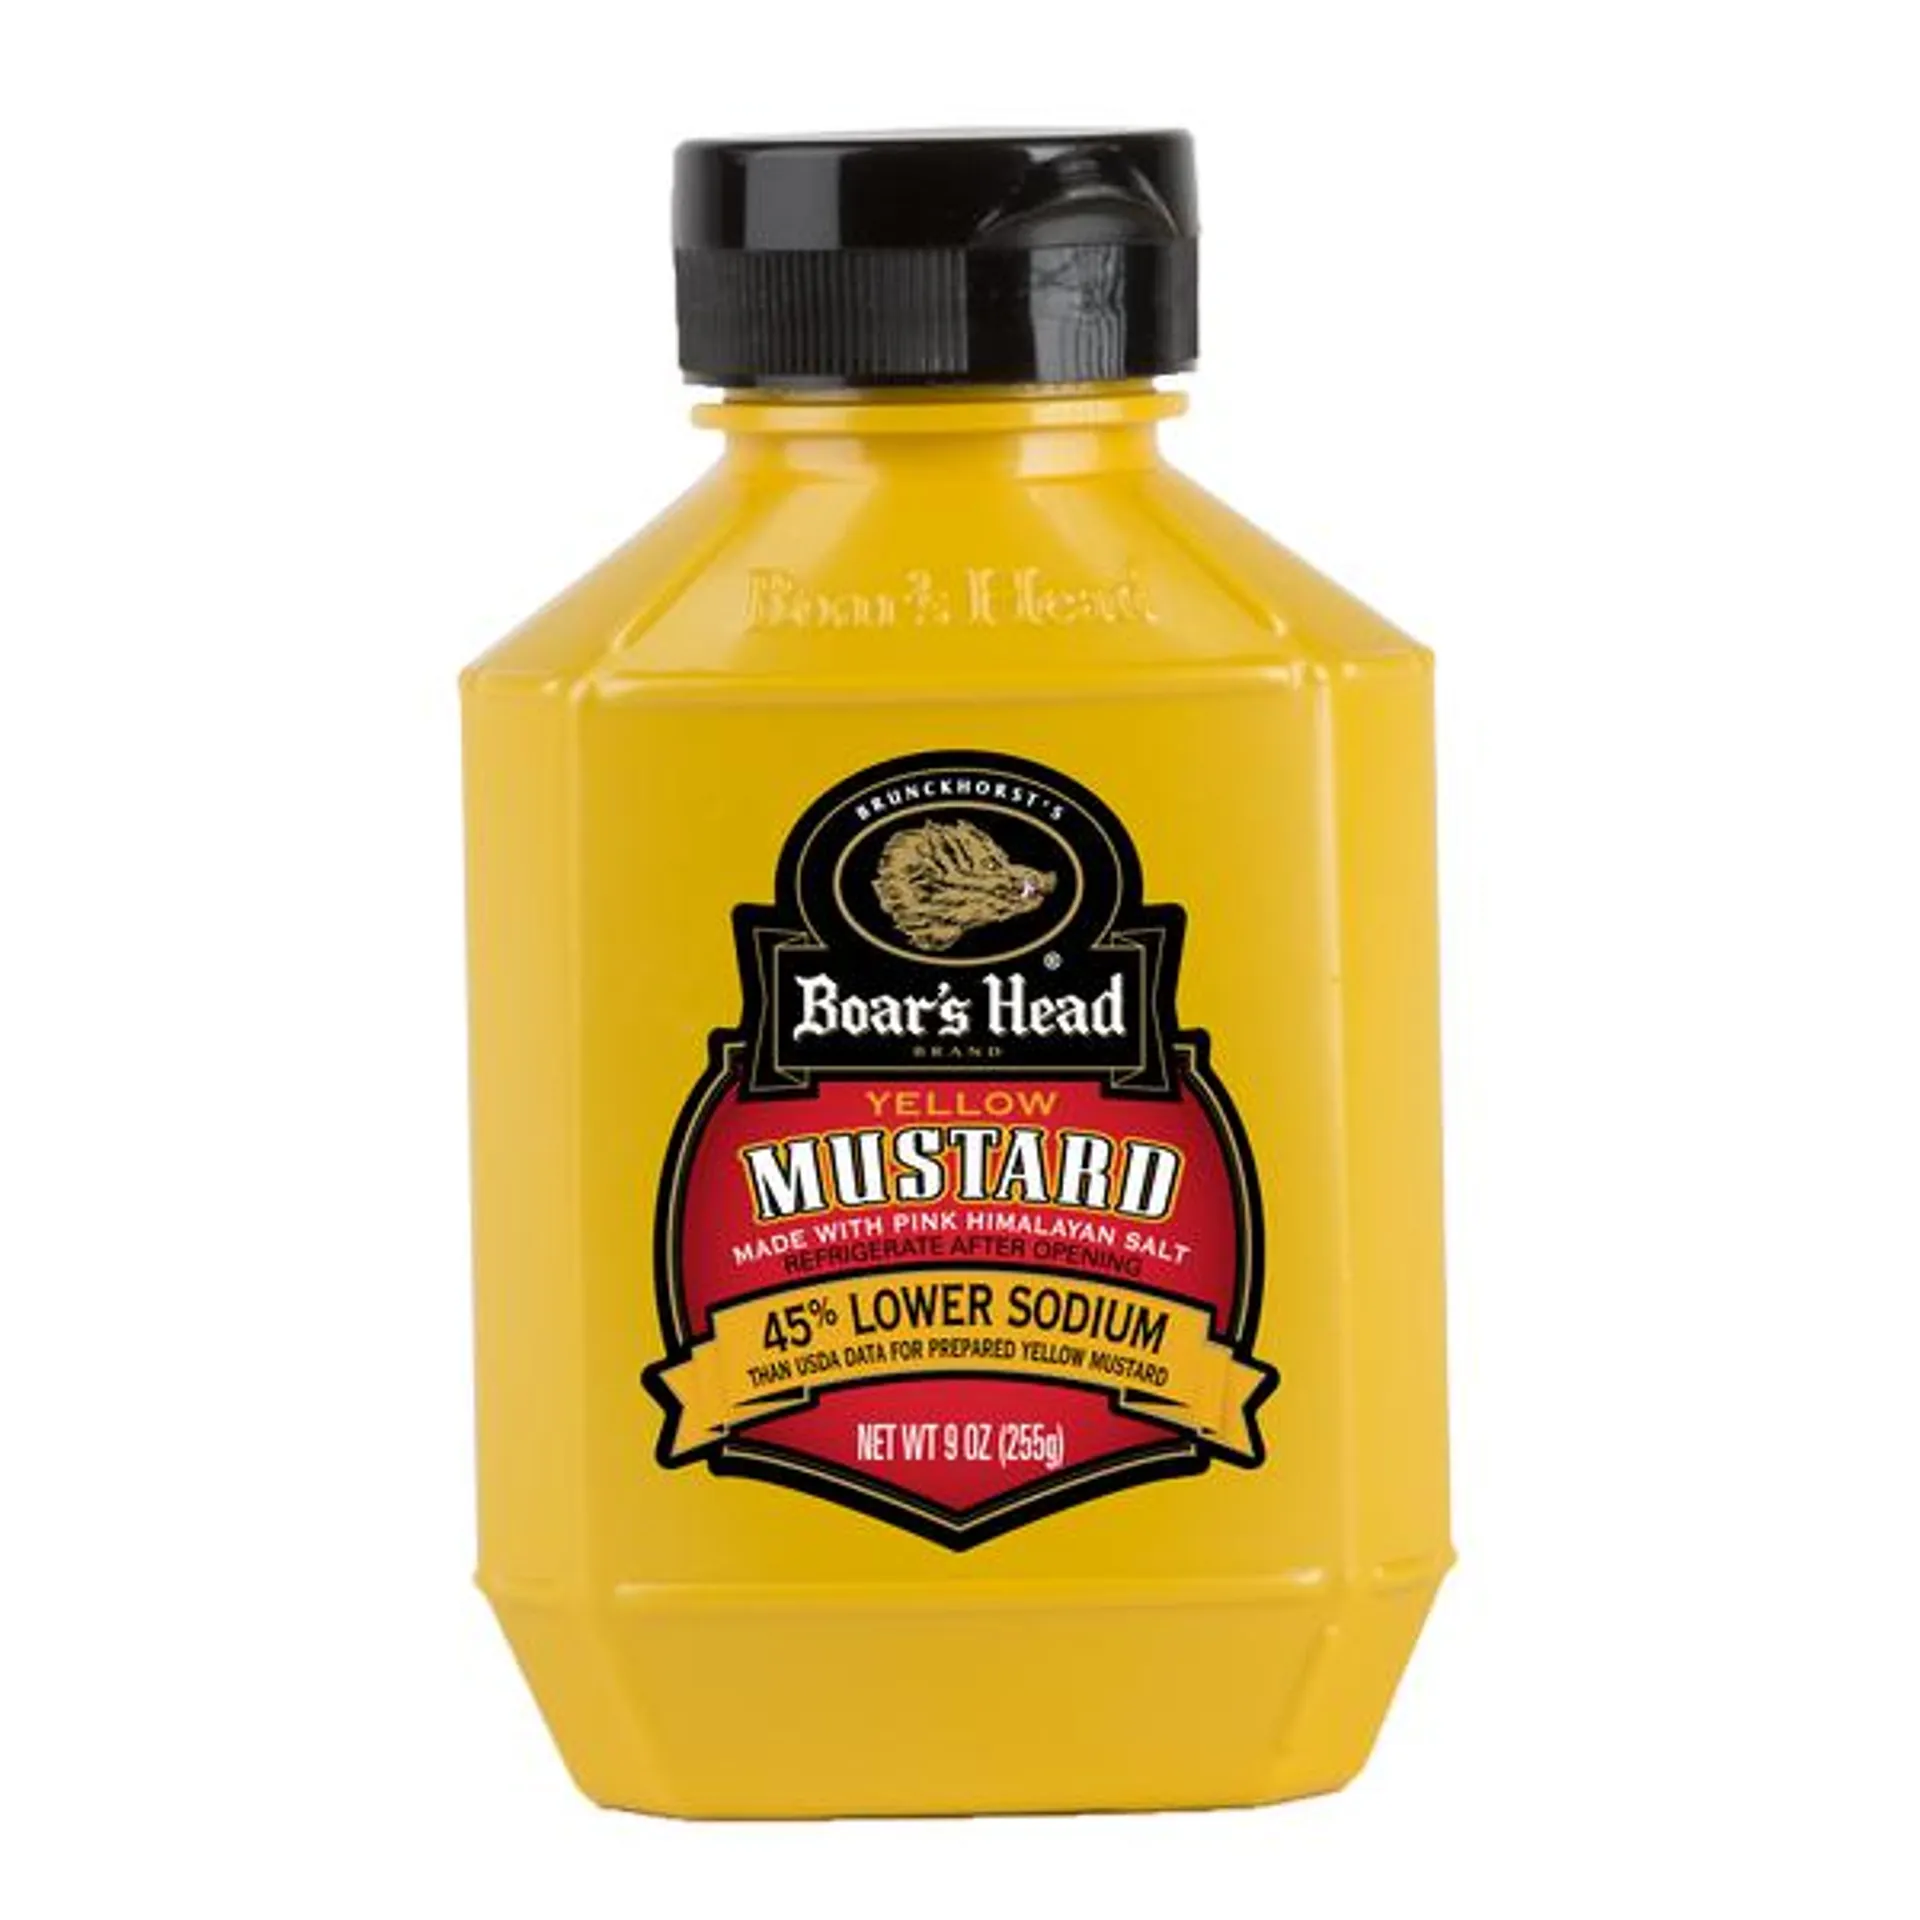 Boar's Head 54% Lower Sodium Yellow Mustard - 9 Ounce